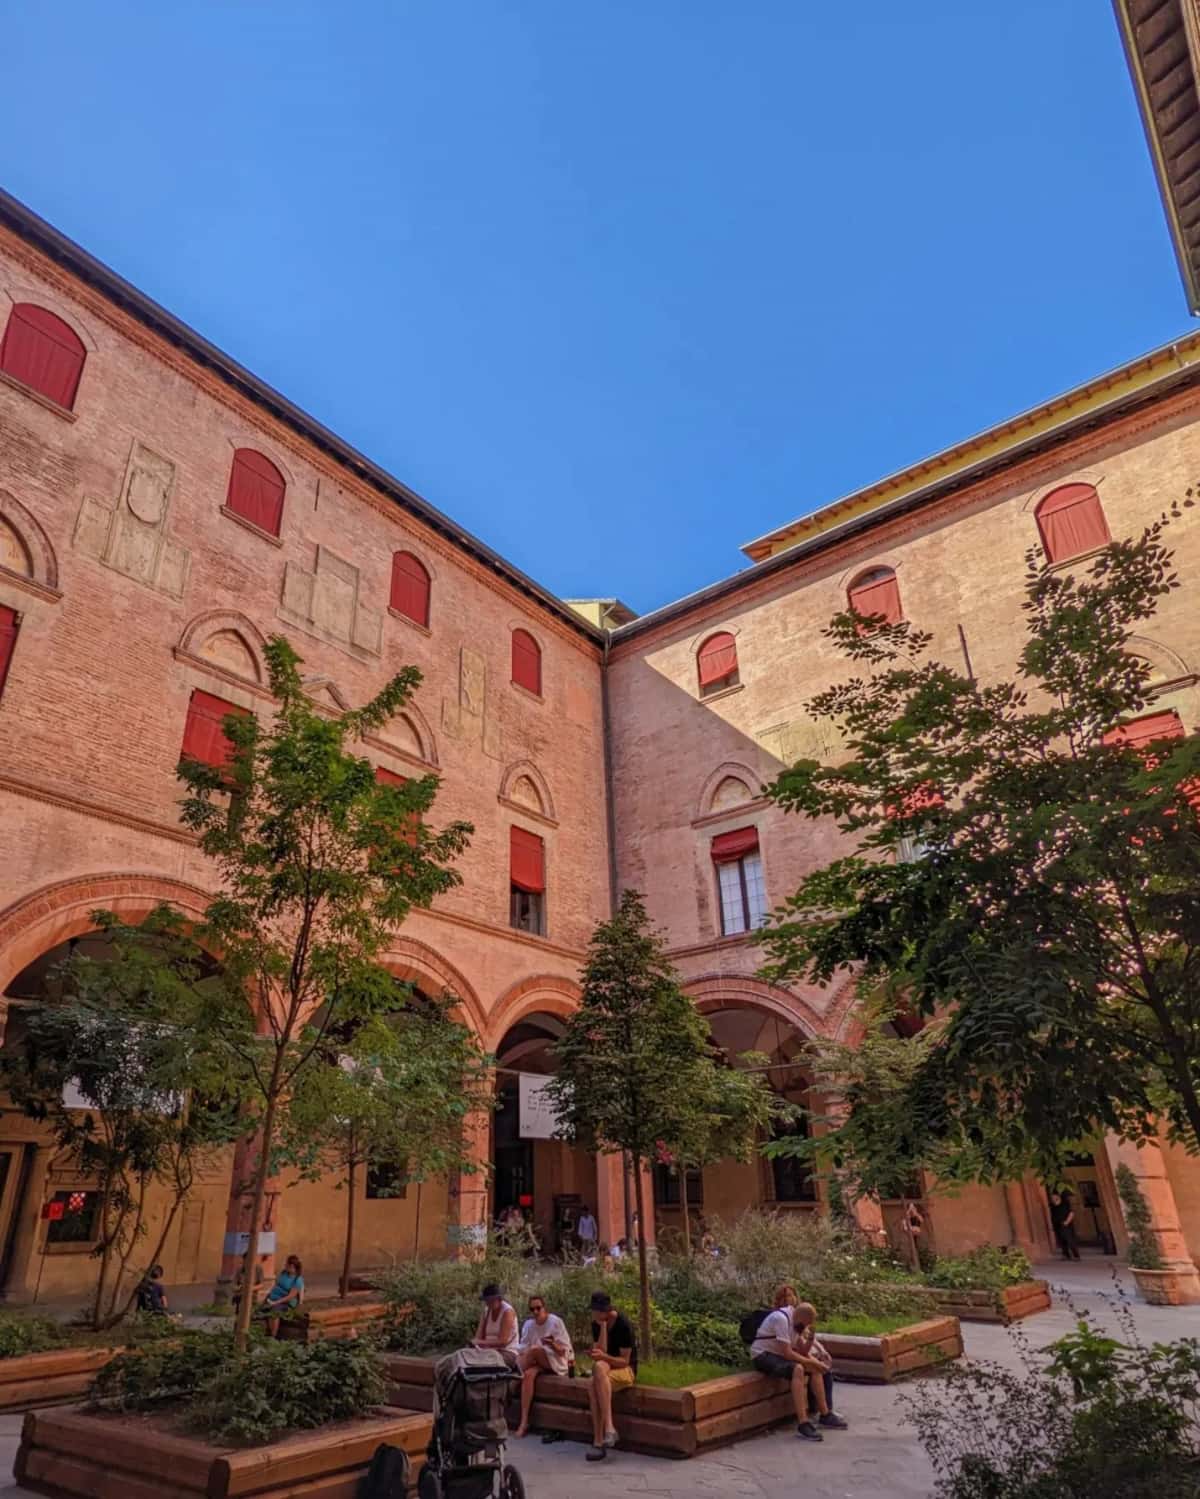 Centro Storico (Historic Center) Bologna